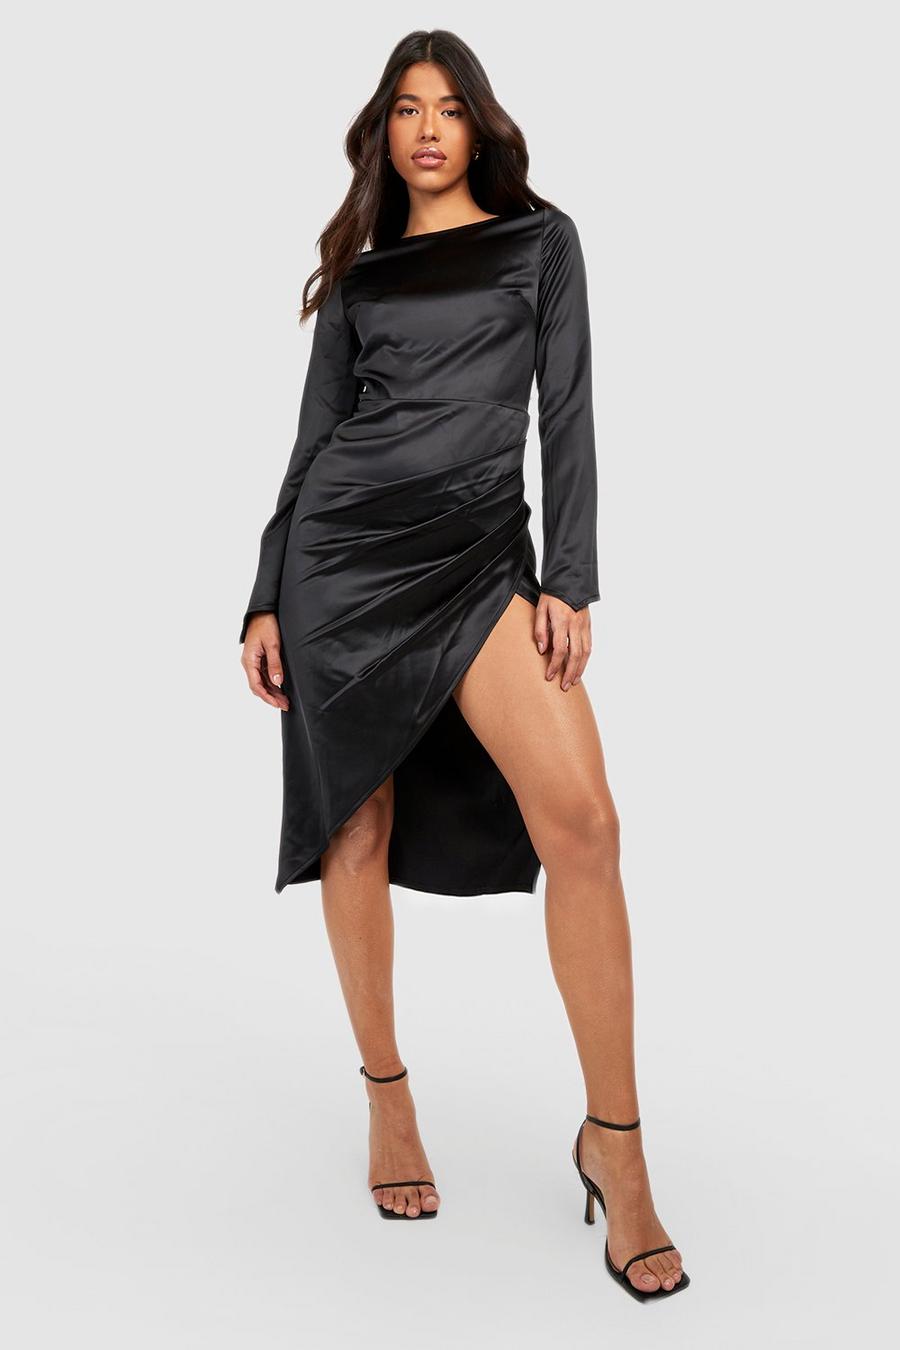 Black Tall Midiklänning i satin med öppen rygg och strass